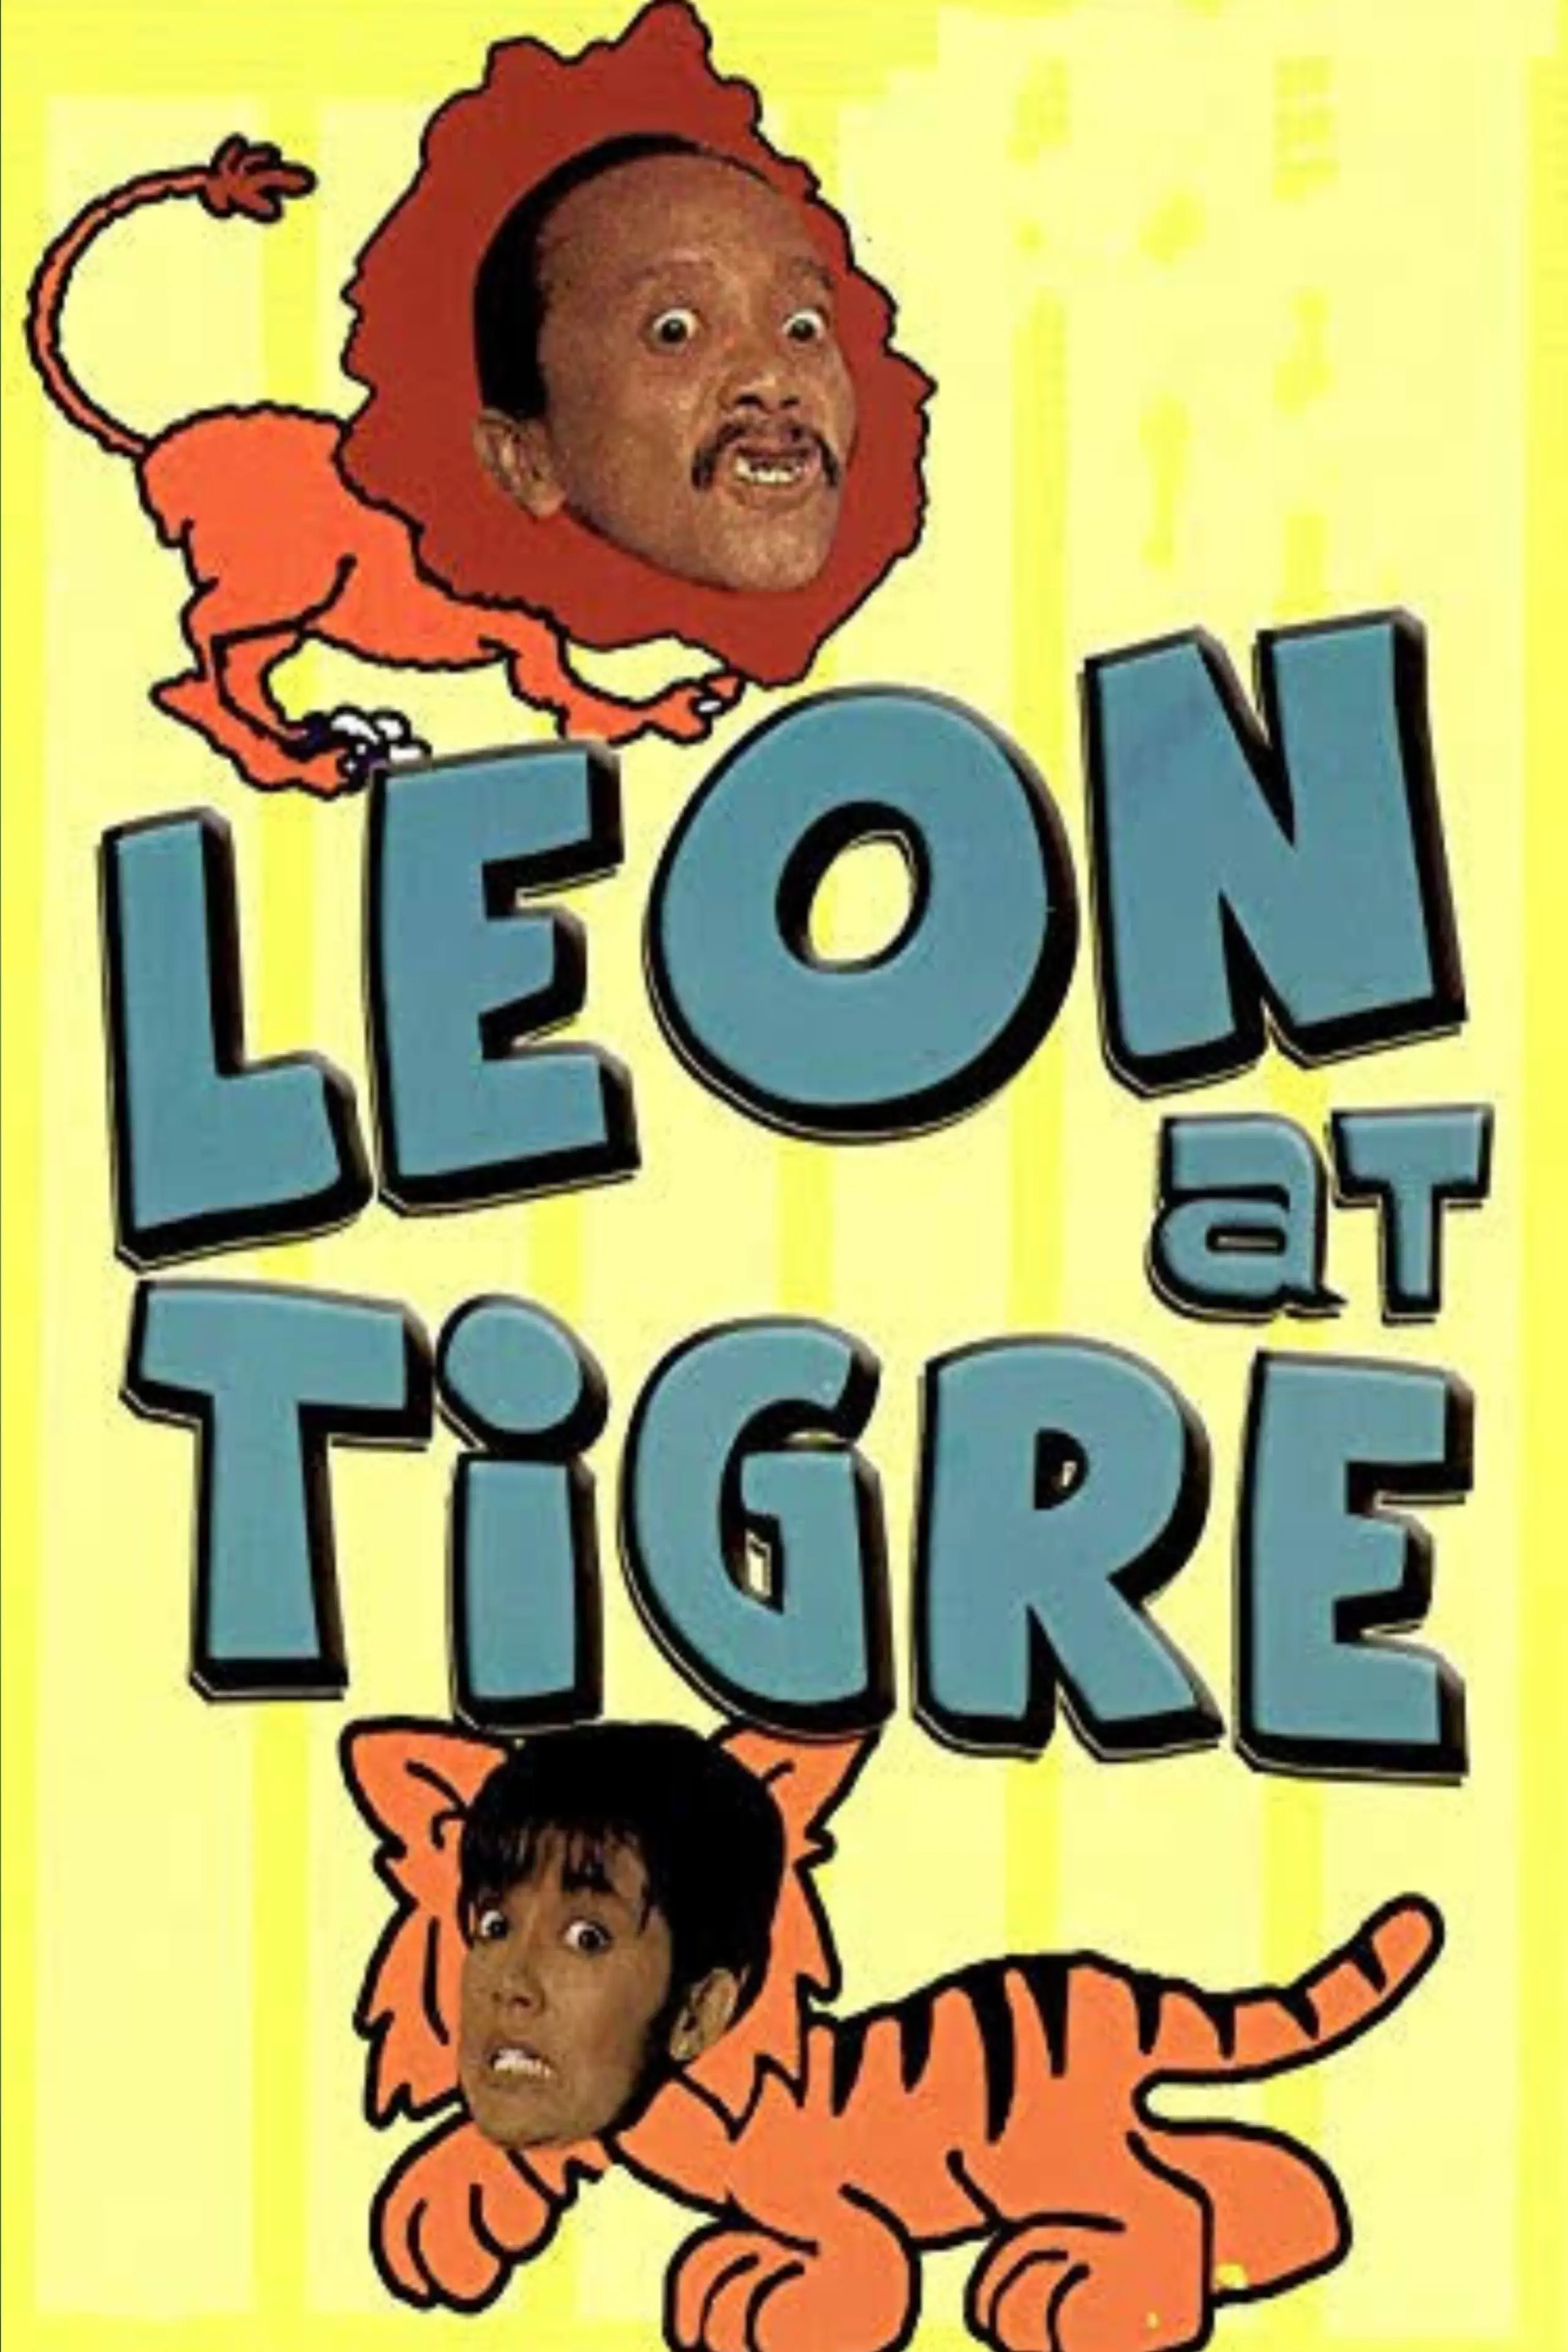 Leon at Tigre